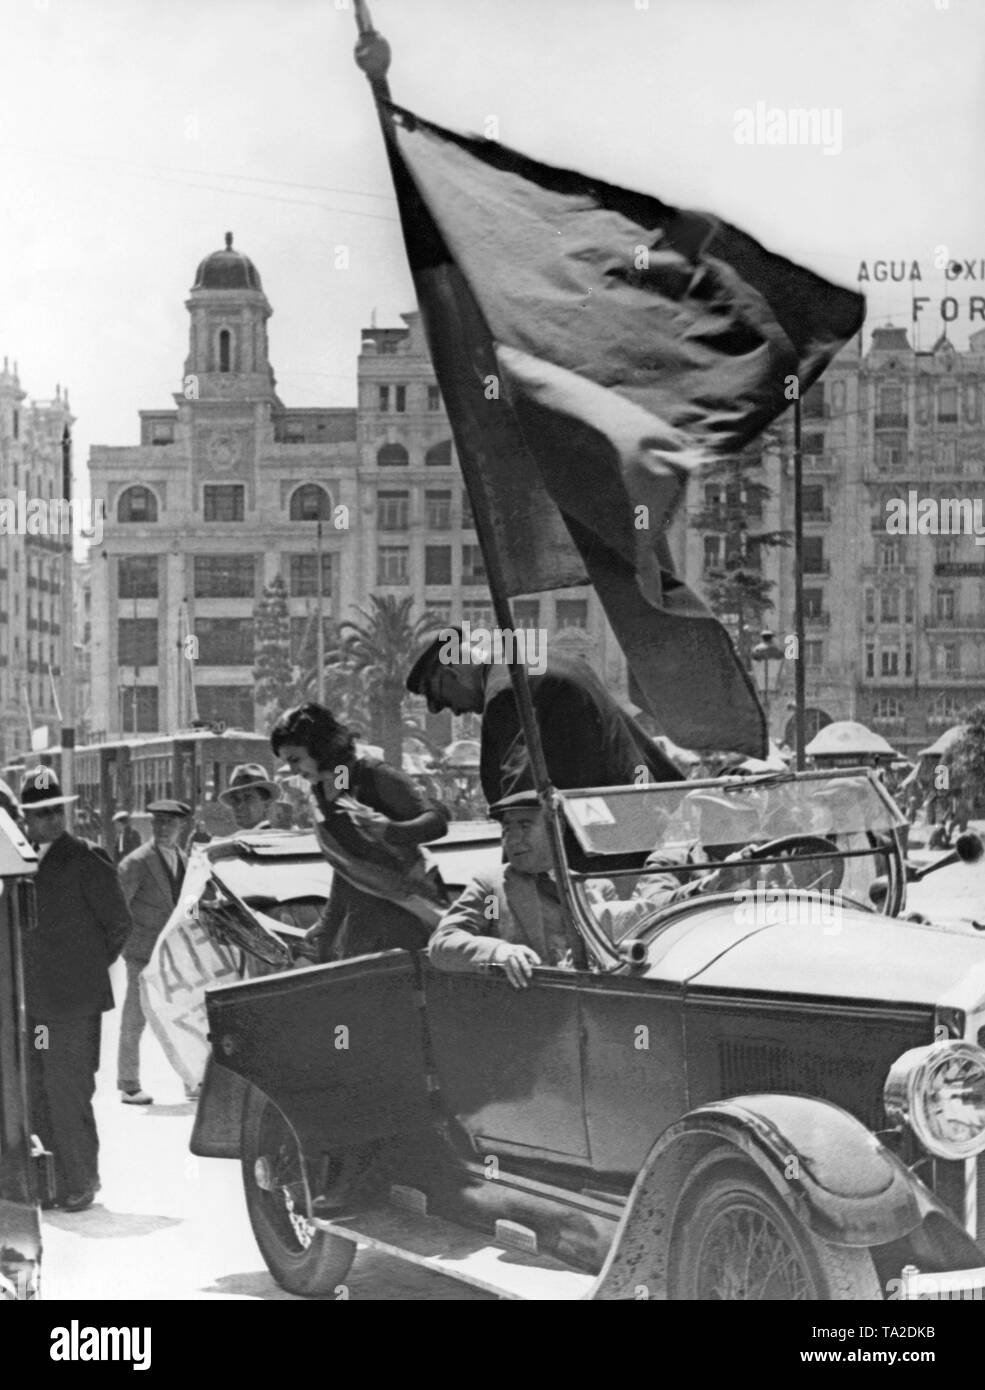 Photo de la campagne électorale en Espagne : un jeune espagnol, avec une écharpe républicaine, sort d'une voiture pendant une porpaganda ride dans les rues de Madrid. Banque D'Images